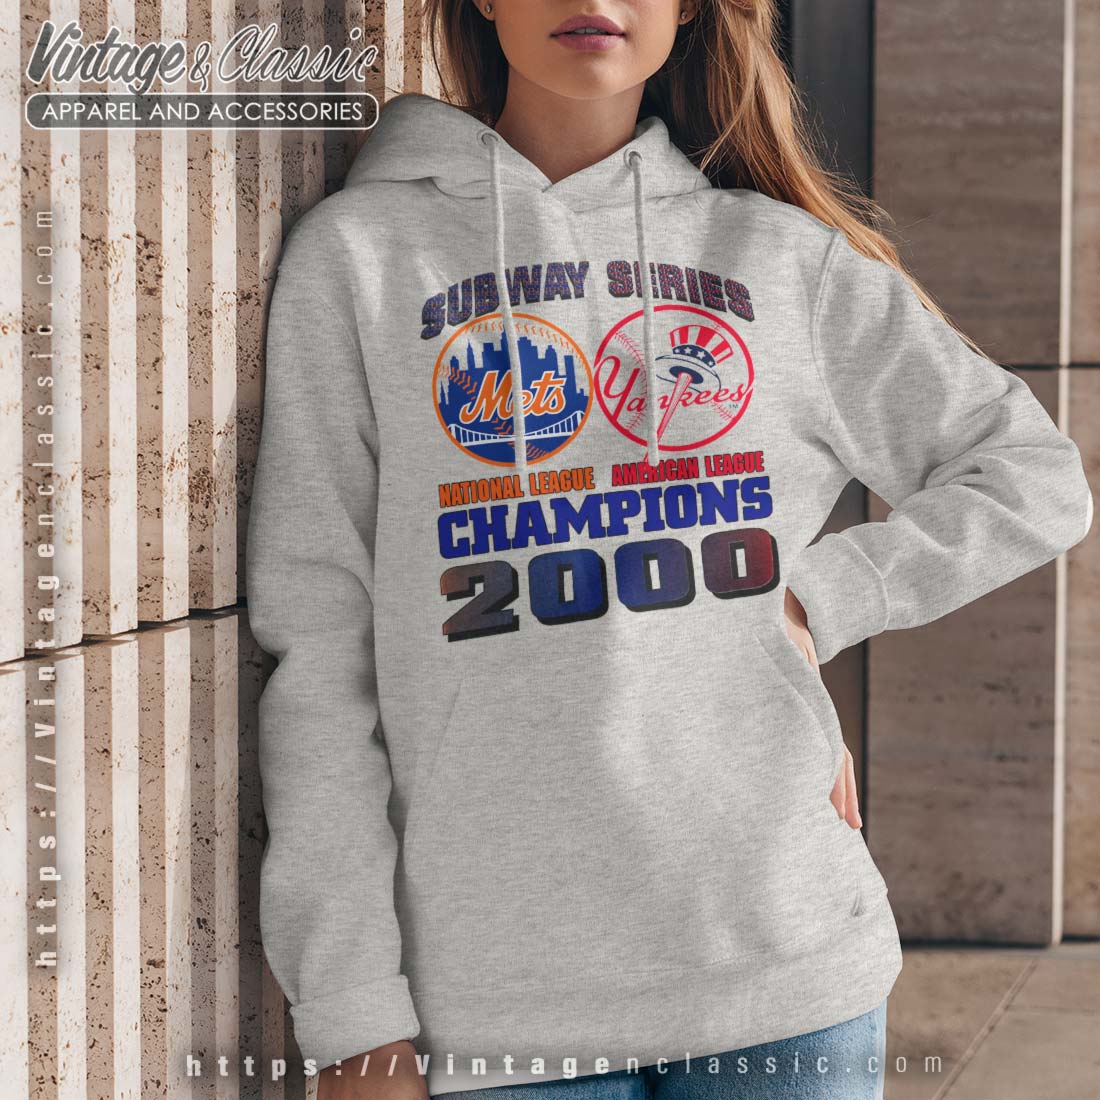 Derek Jeter New York Yankees baseball vintage poster shirt, hoodie, sweater,  long sleeve and tank top